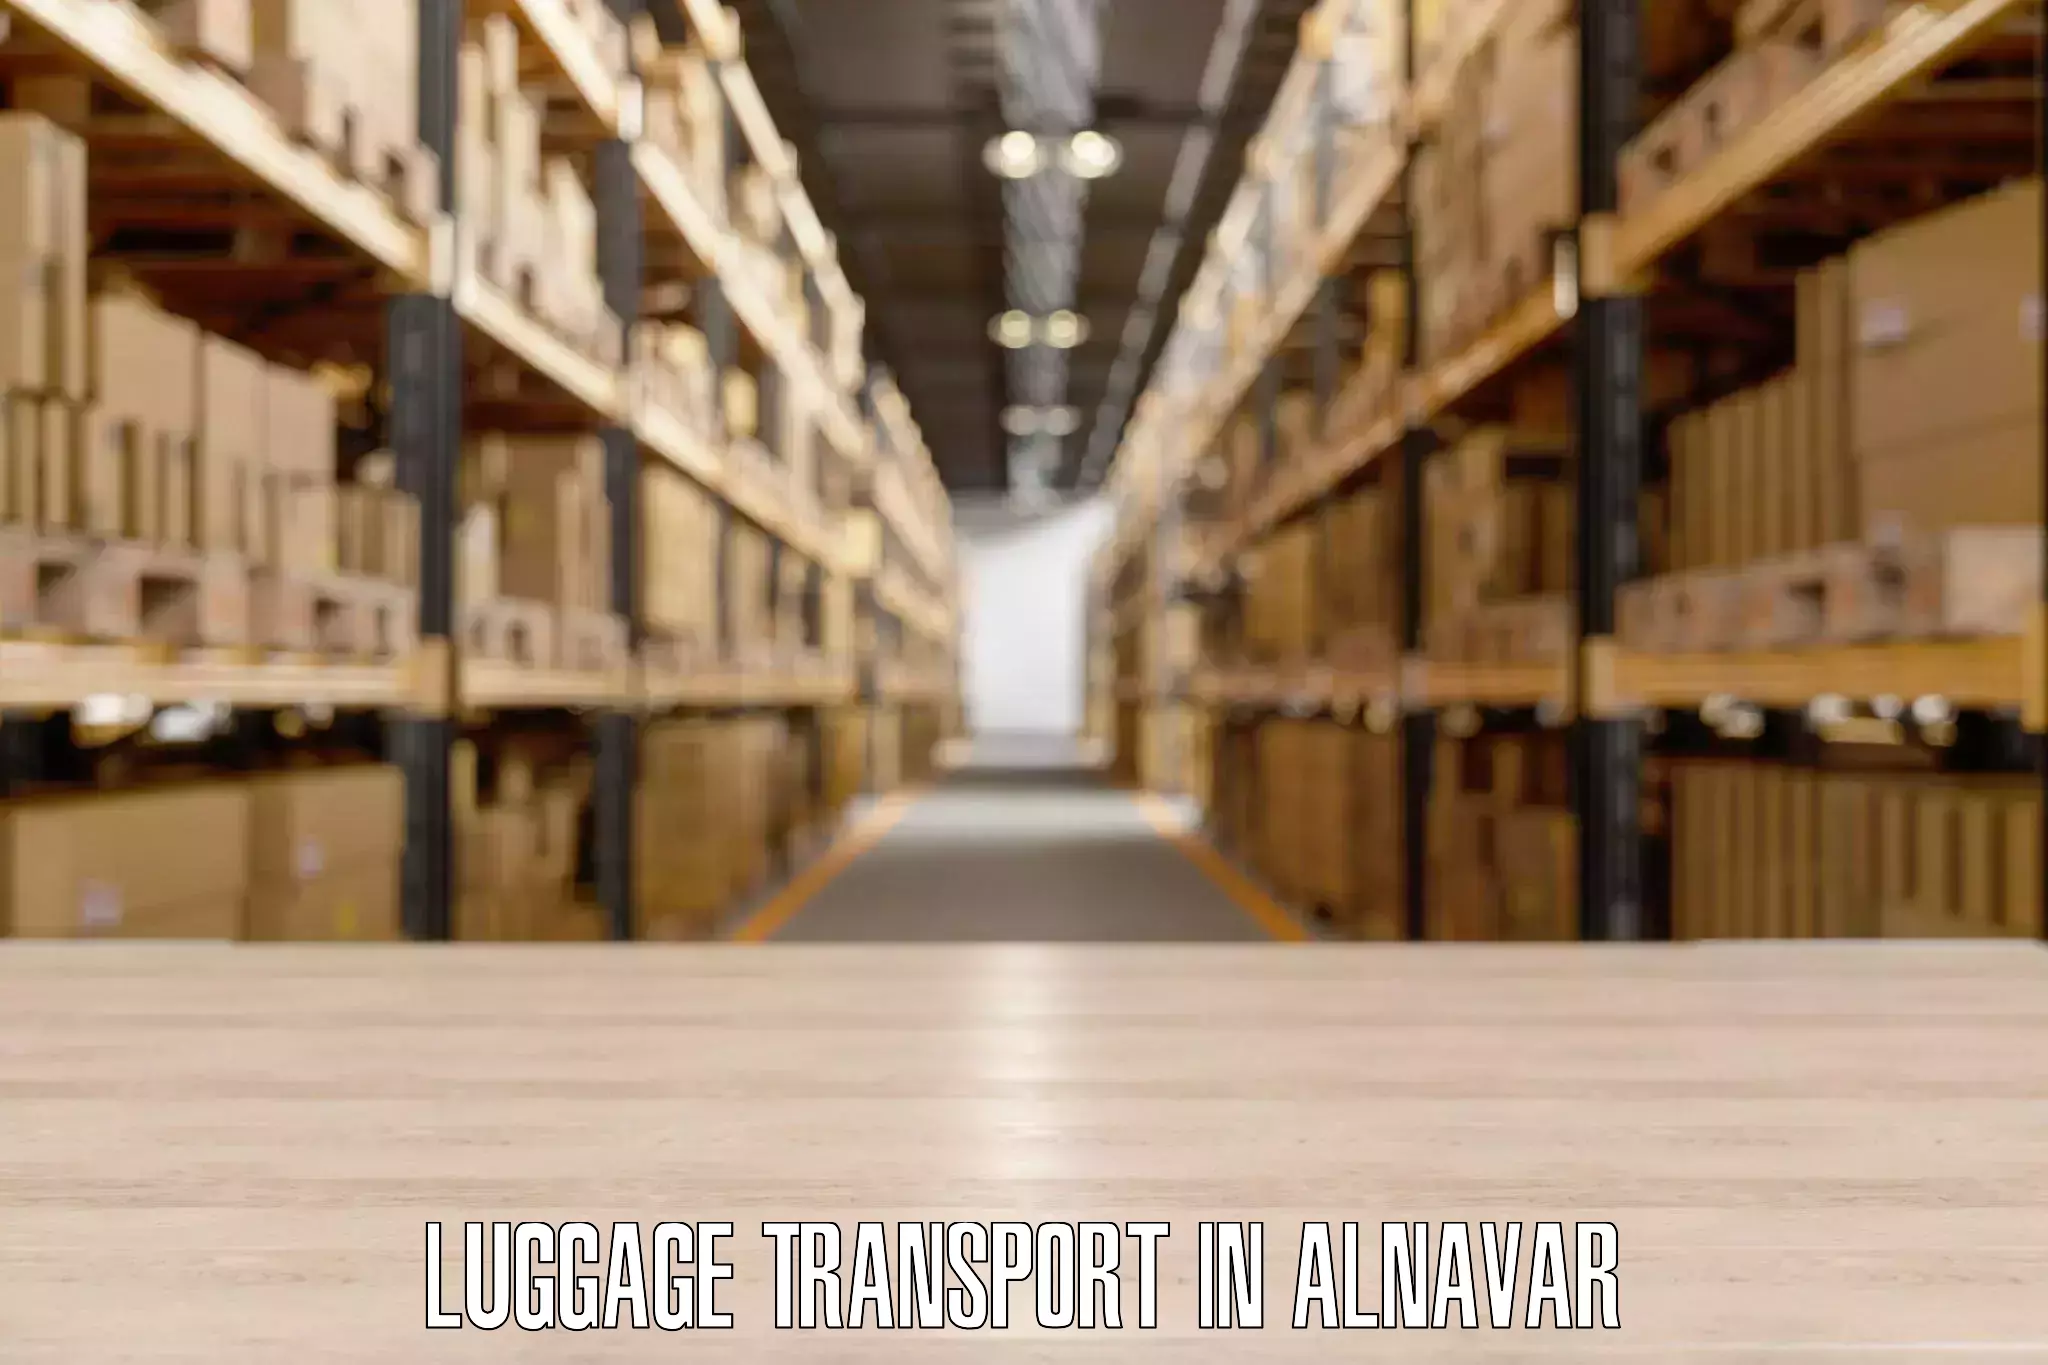 Luggage transfer service in Alnavar